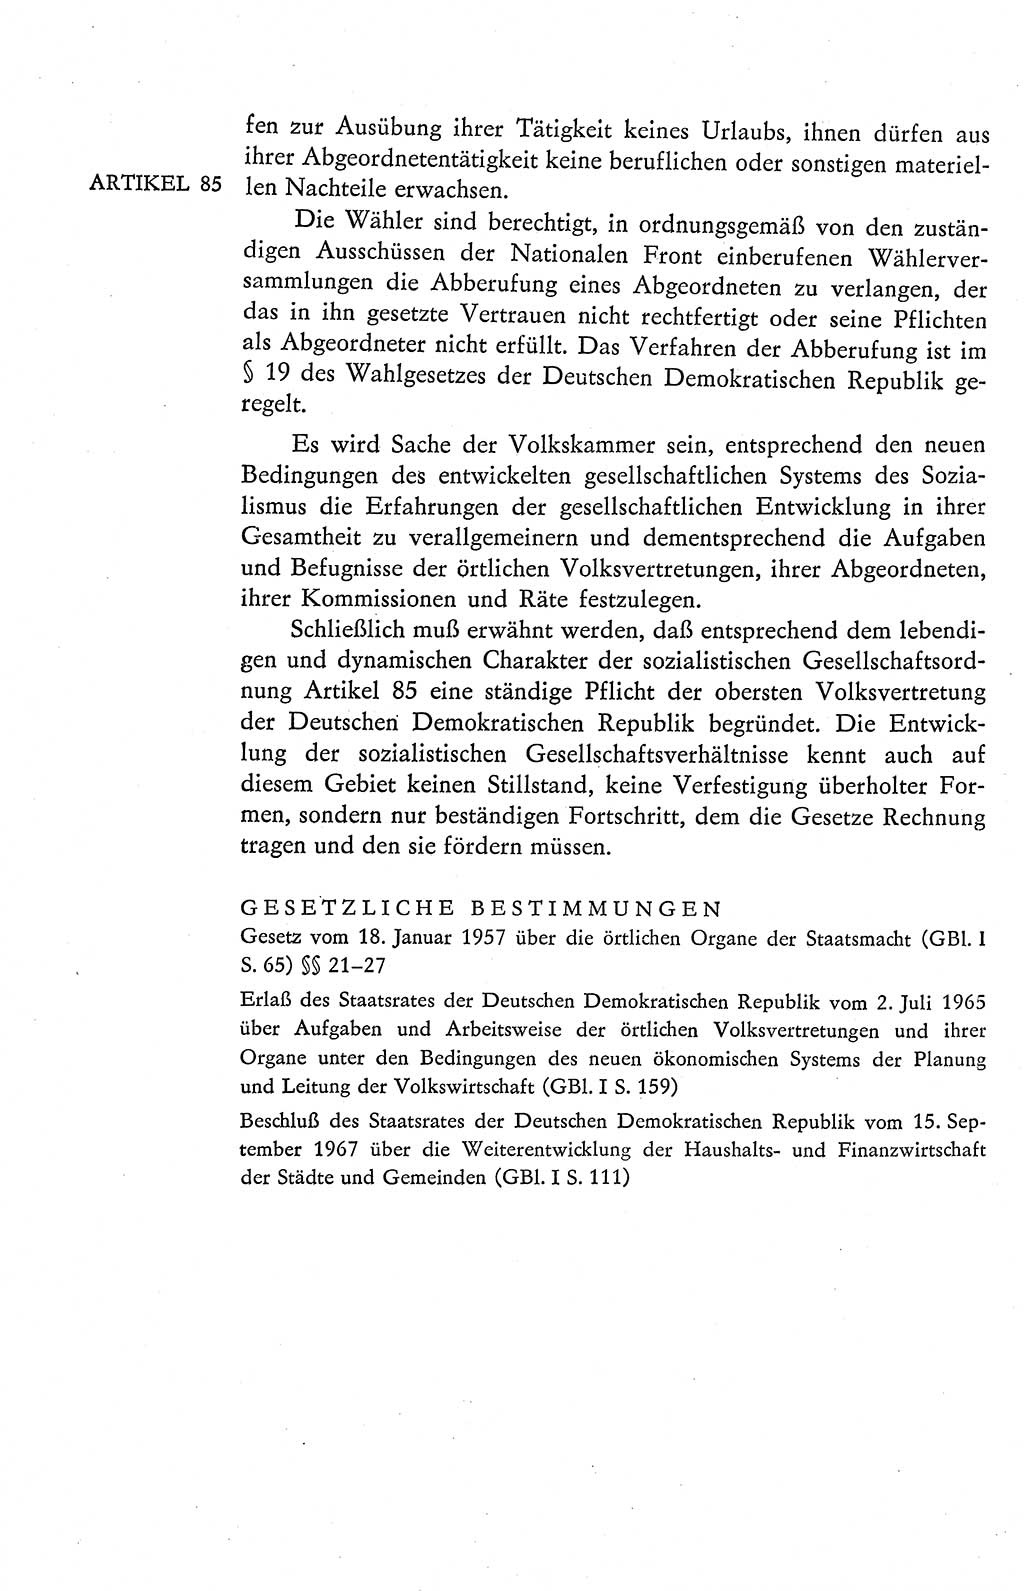 Verfassung der Deutschen Demokratischen Republik (DDR), Dokumente, Kommentar 1969, Band 2, Seite 398 (Verf. DDR Dok. Komm. 1969, Bd. 2, S. 398)